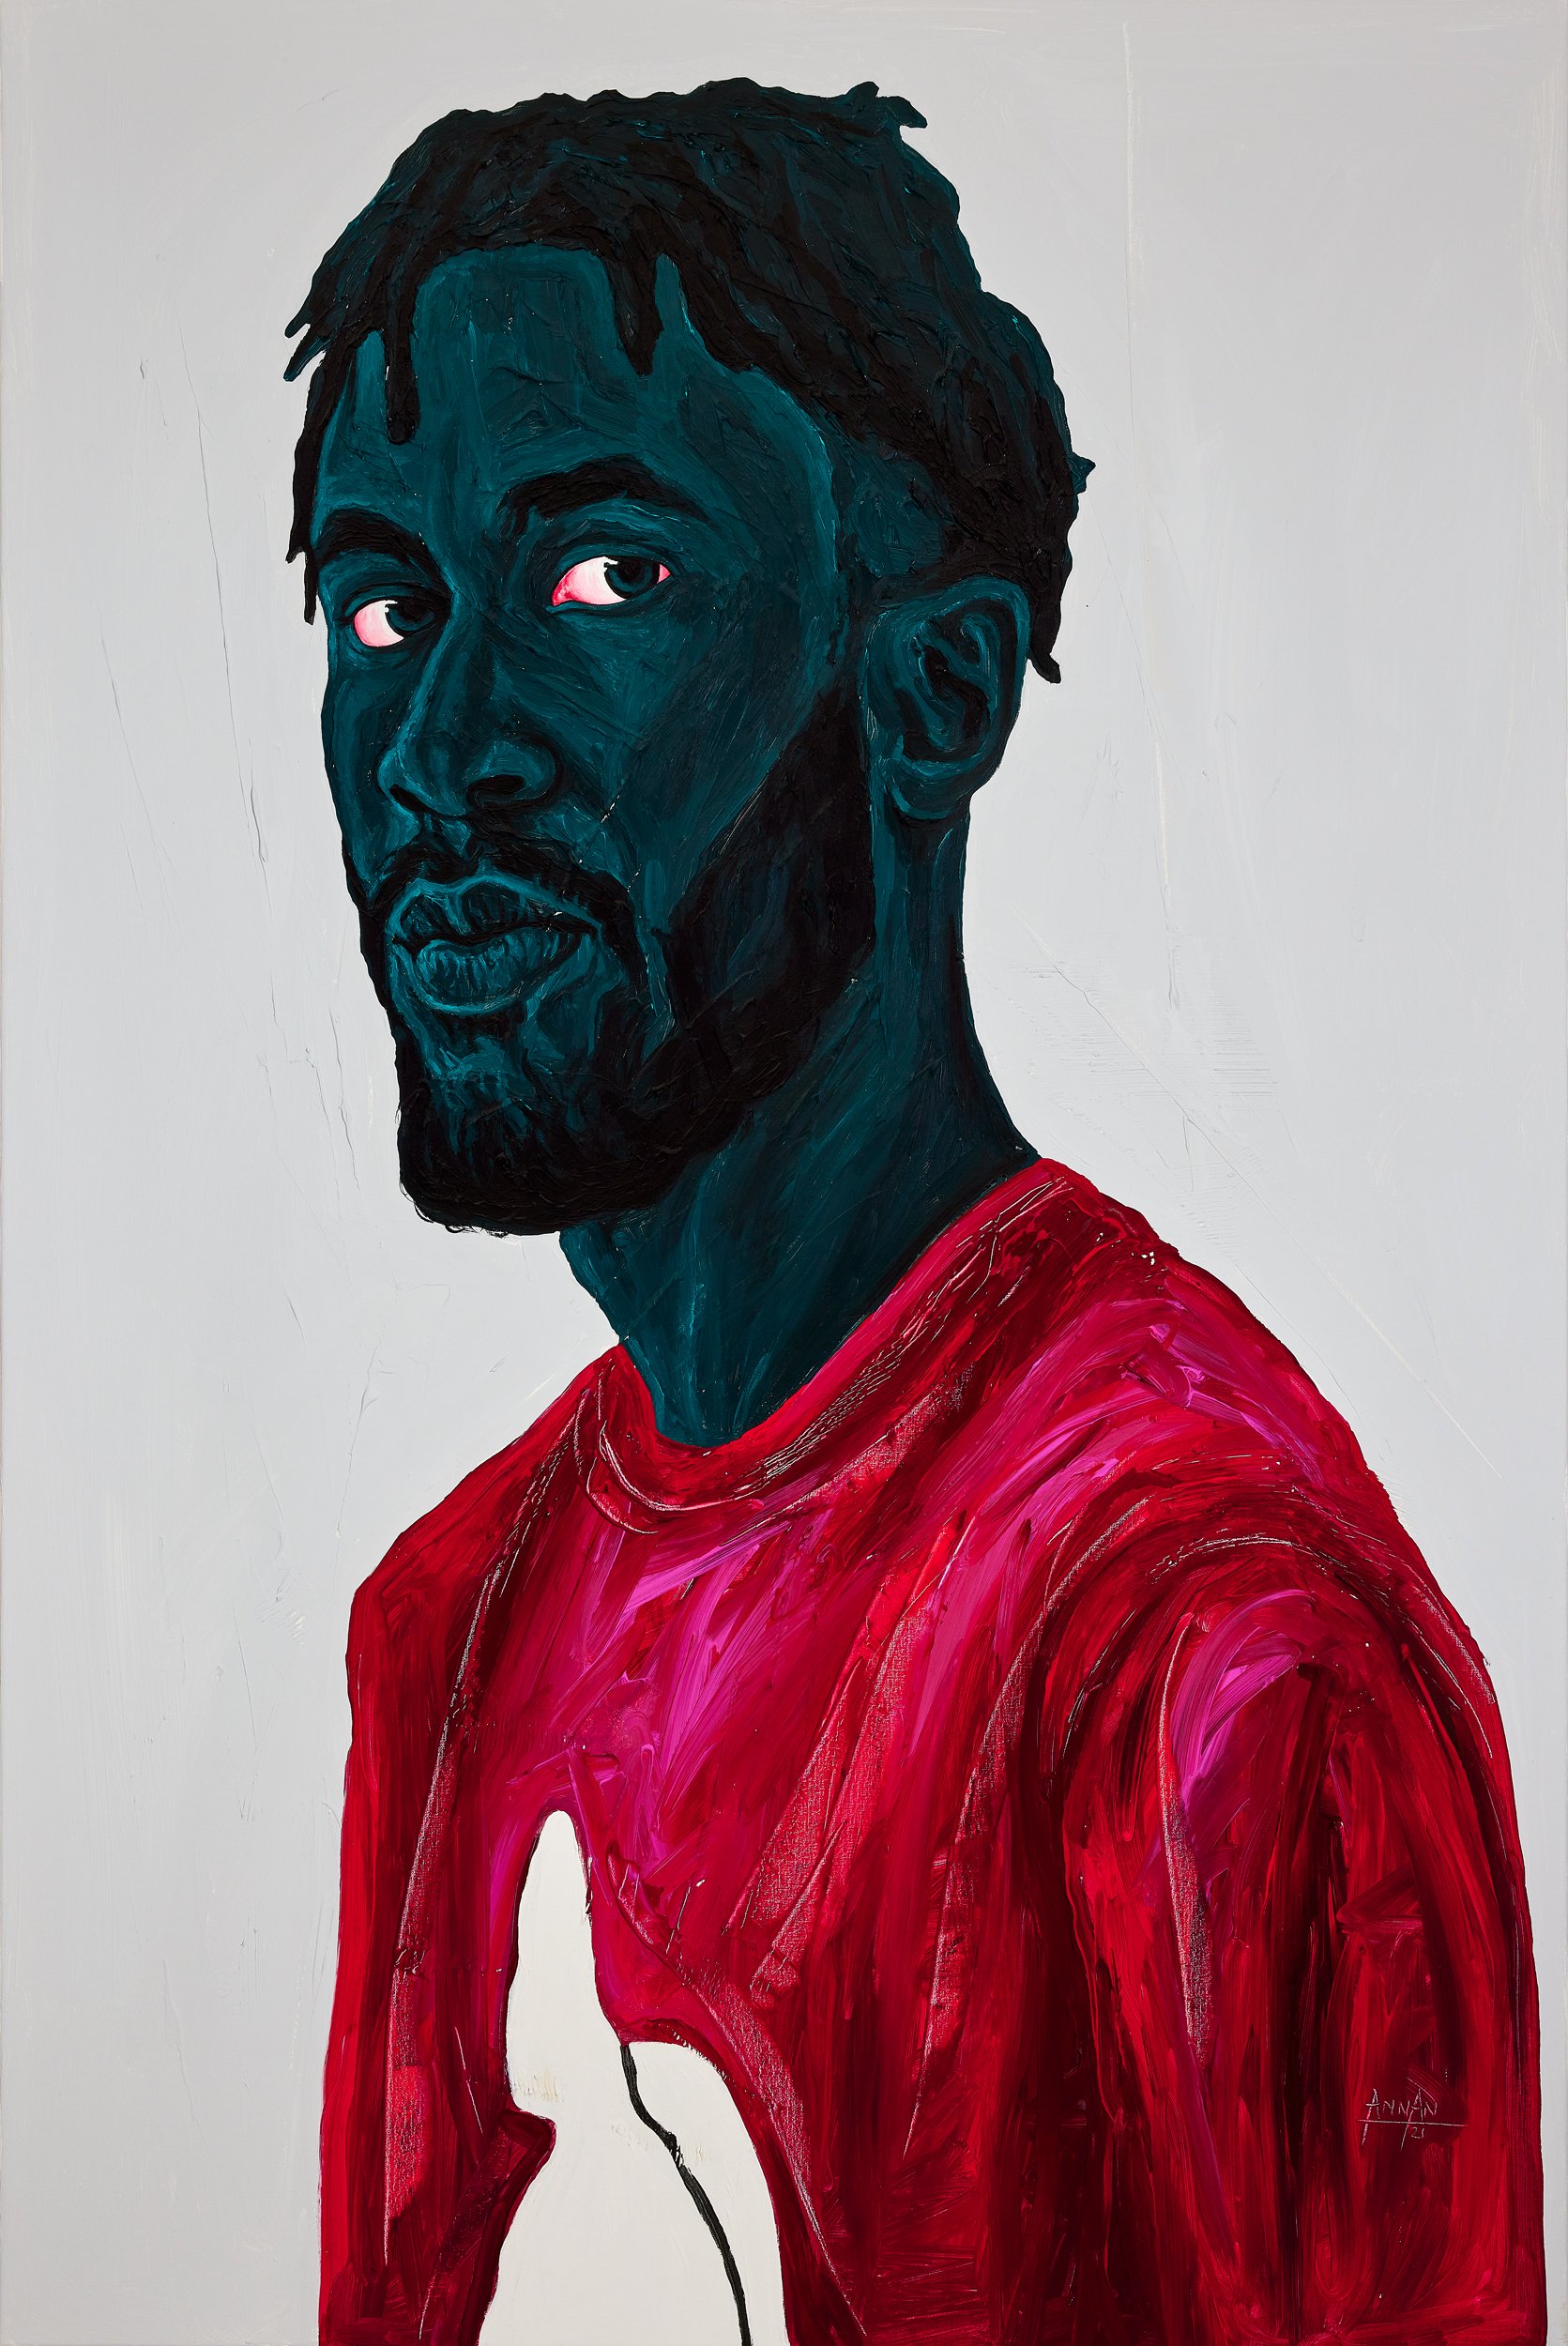 Annan Affotey, Double take, acrylic on canvas, 150 x 100 cm LR